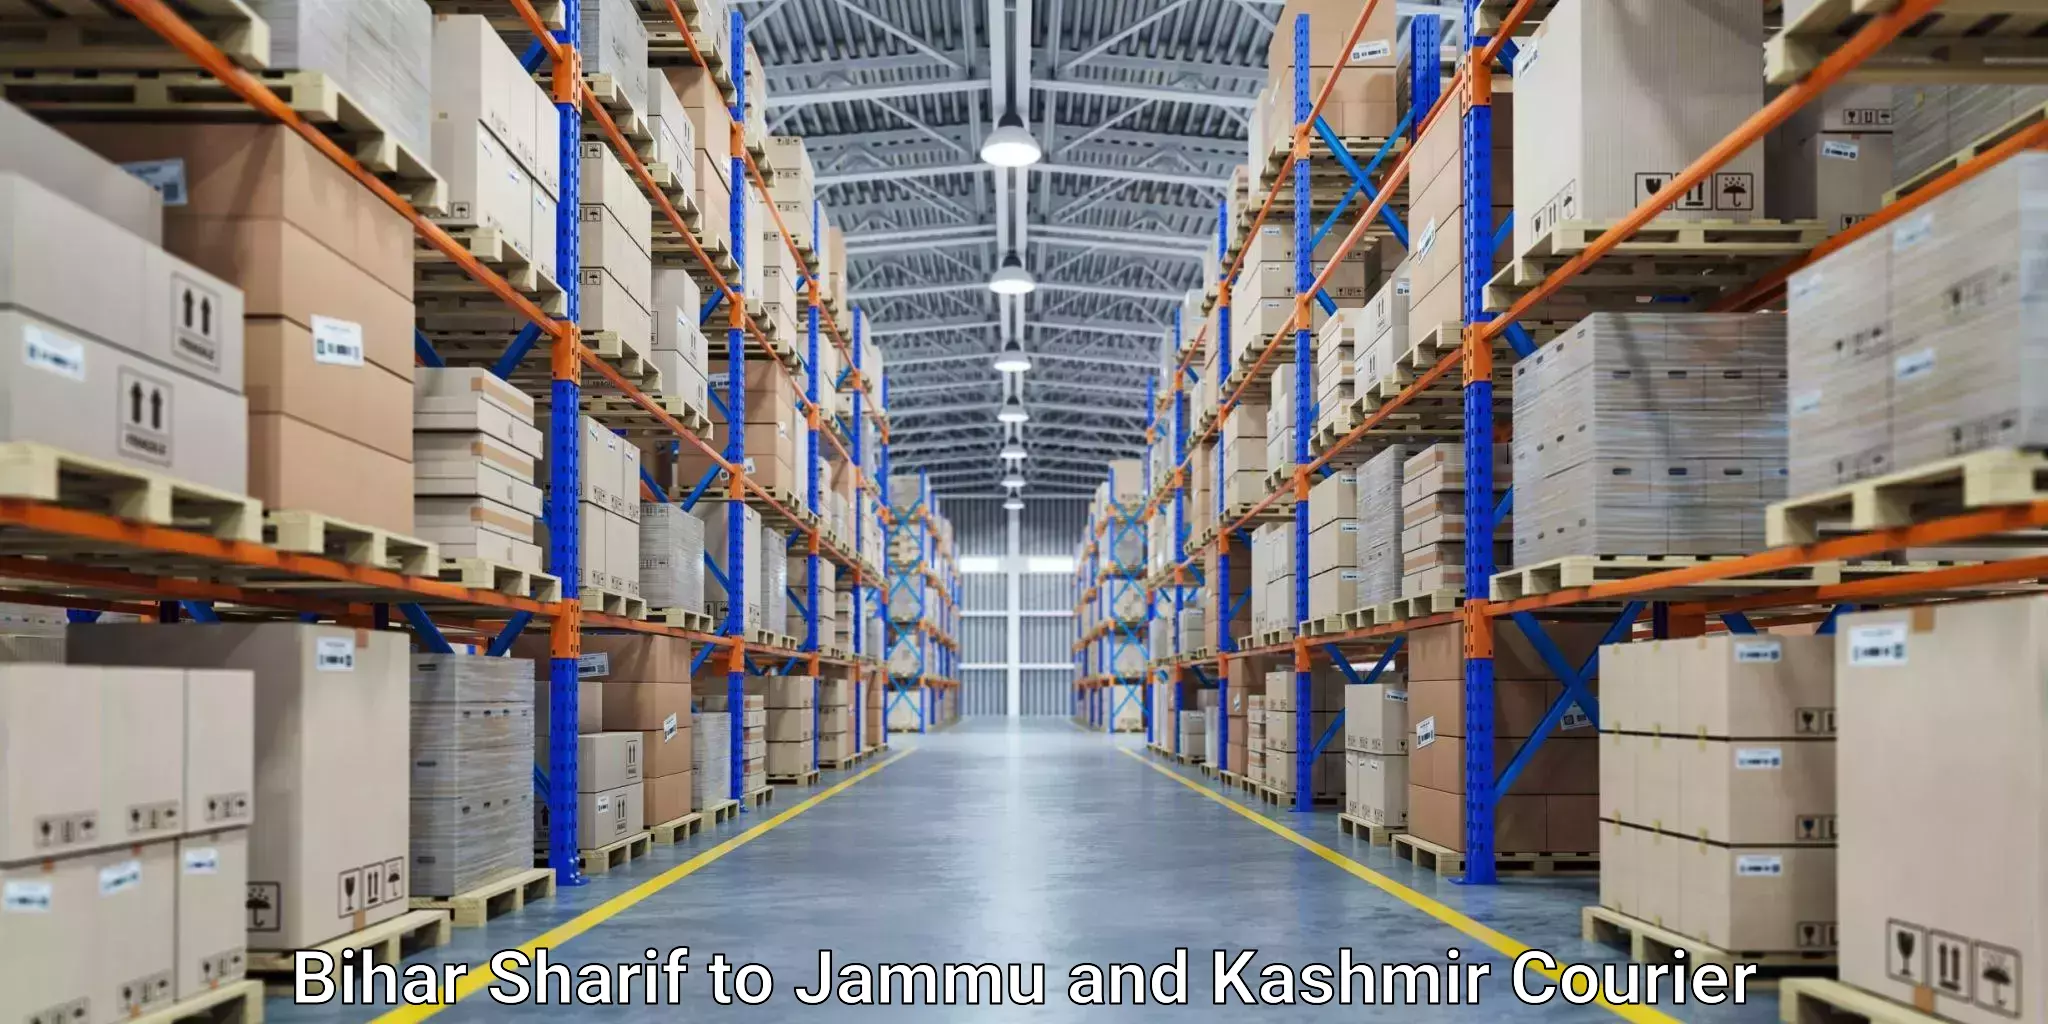 Express logistics service Bihar Sharif to Jammu